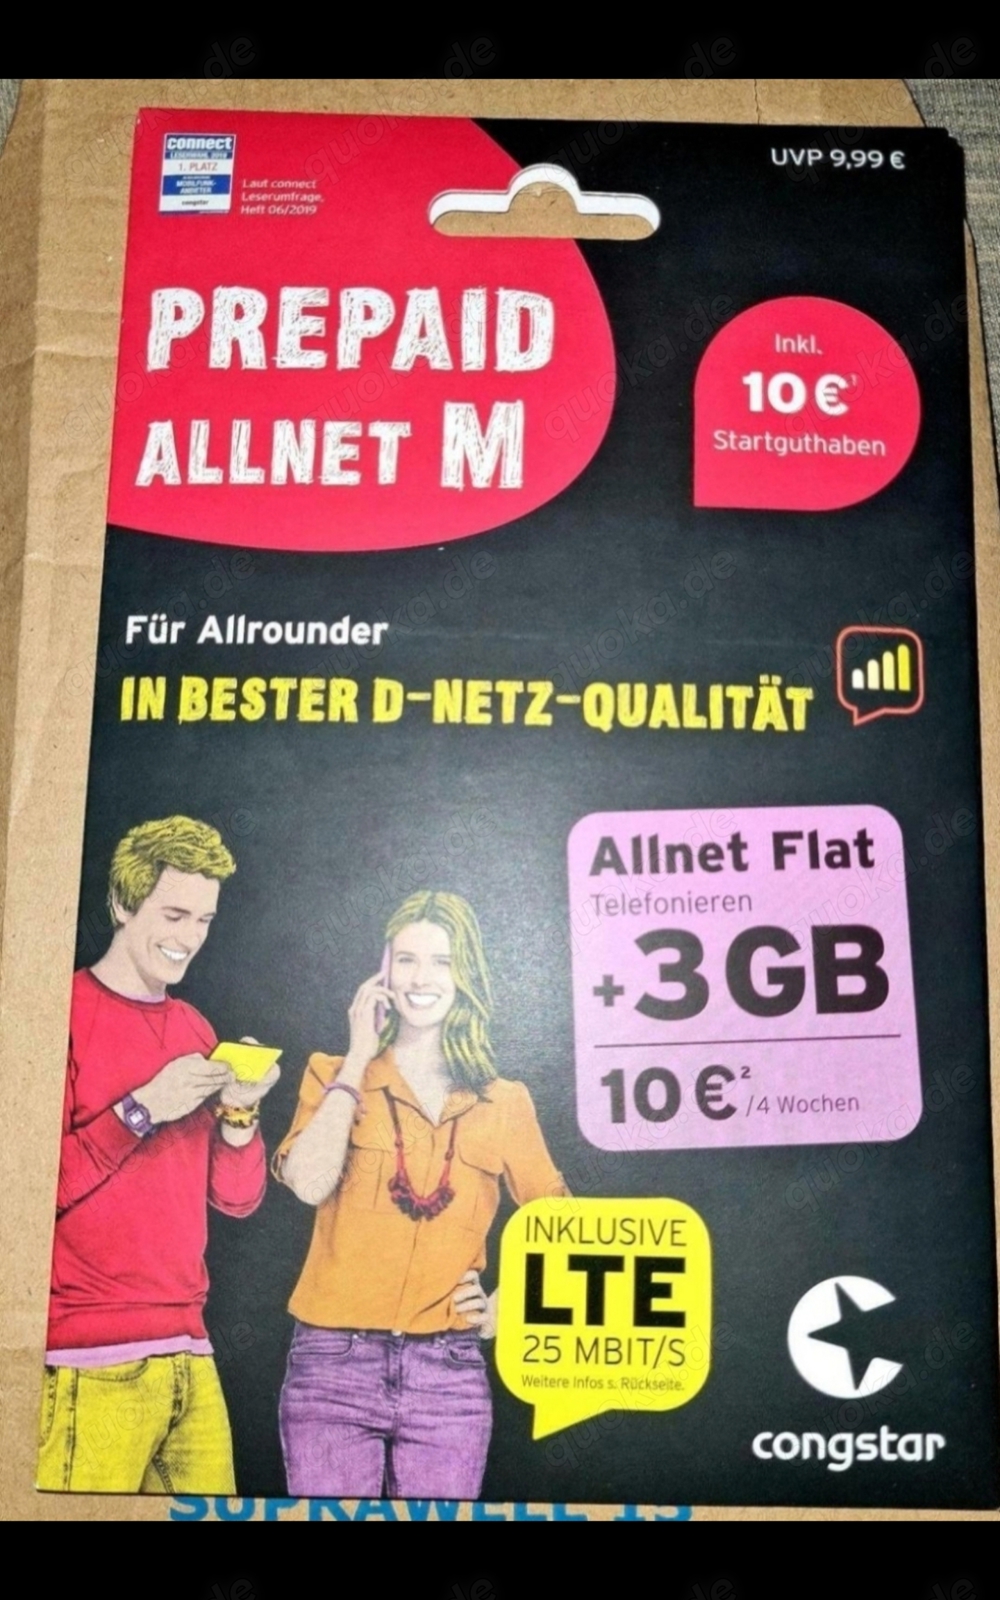 1x Prepaid Allnet M Der Tarif für Allrounder